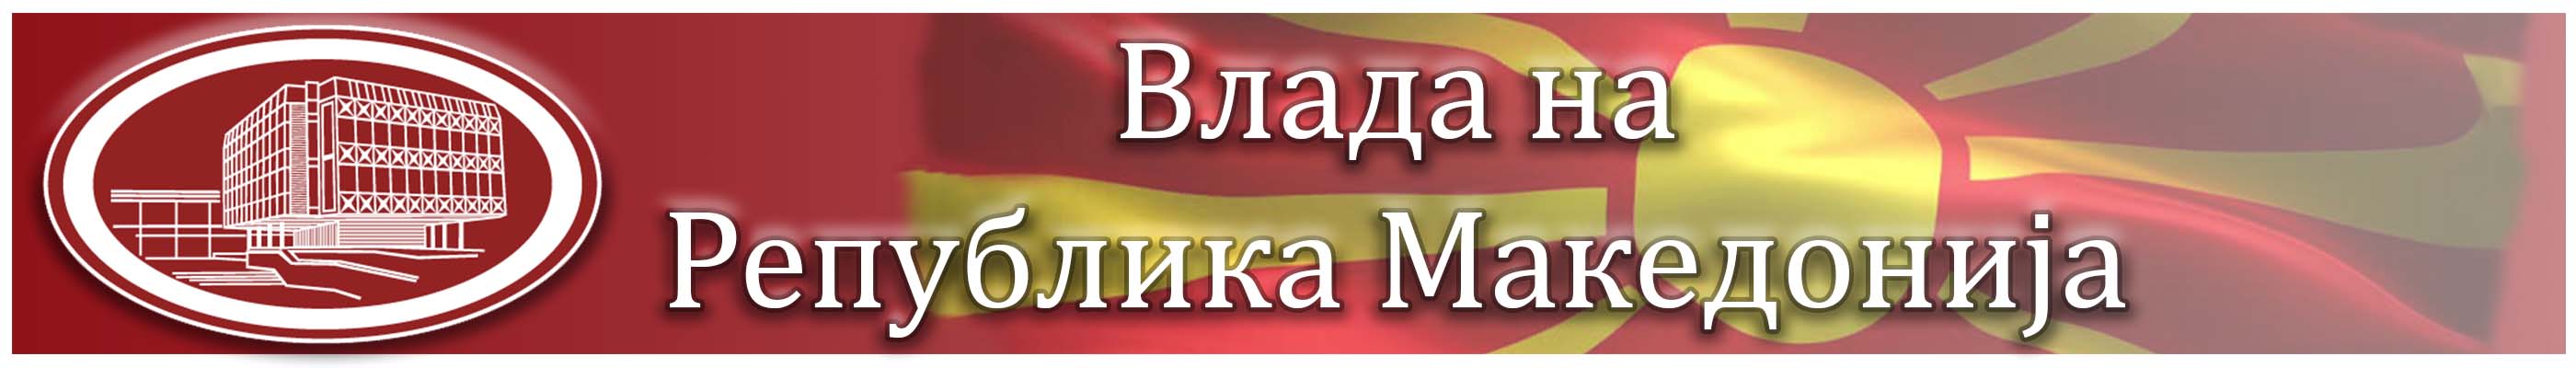 Влада на Република Македонија